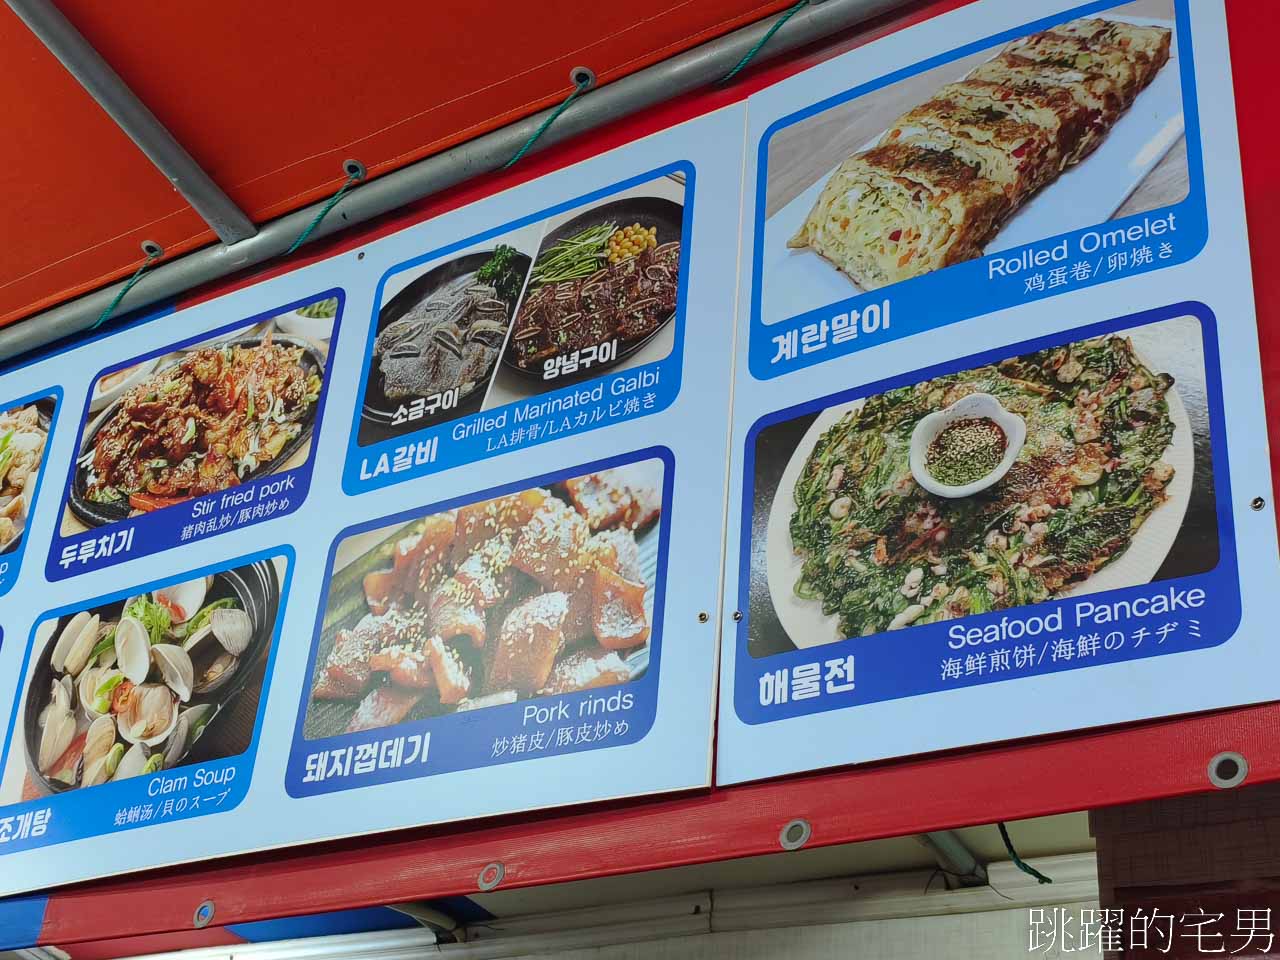 [釜山車站美食]韓國必須體驗「布帳馬車」感受韓劇中吃飯喝酒夜生活